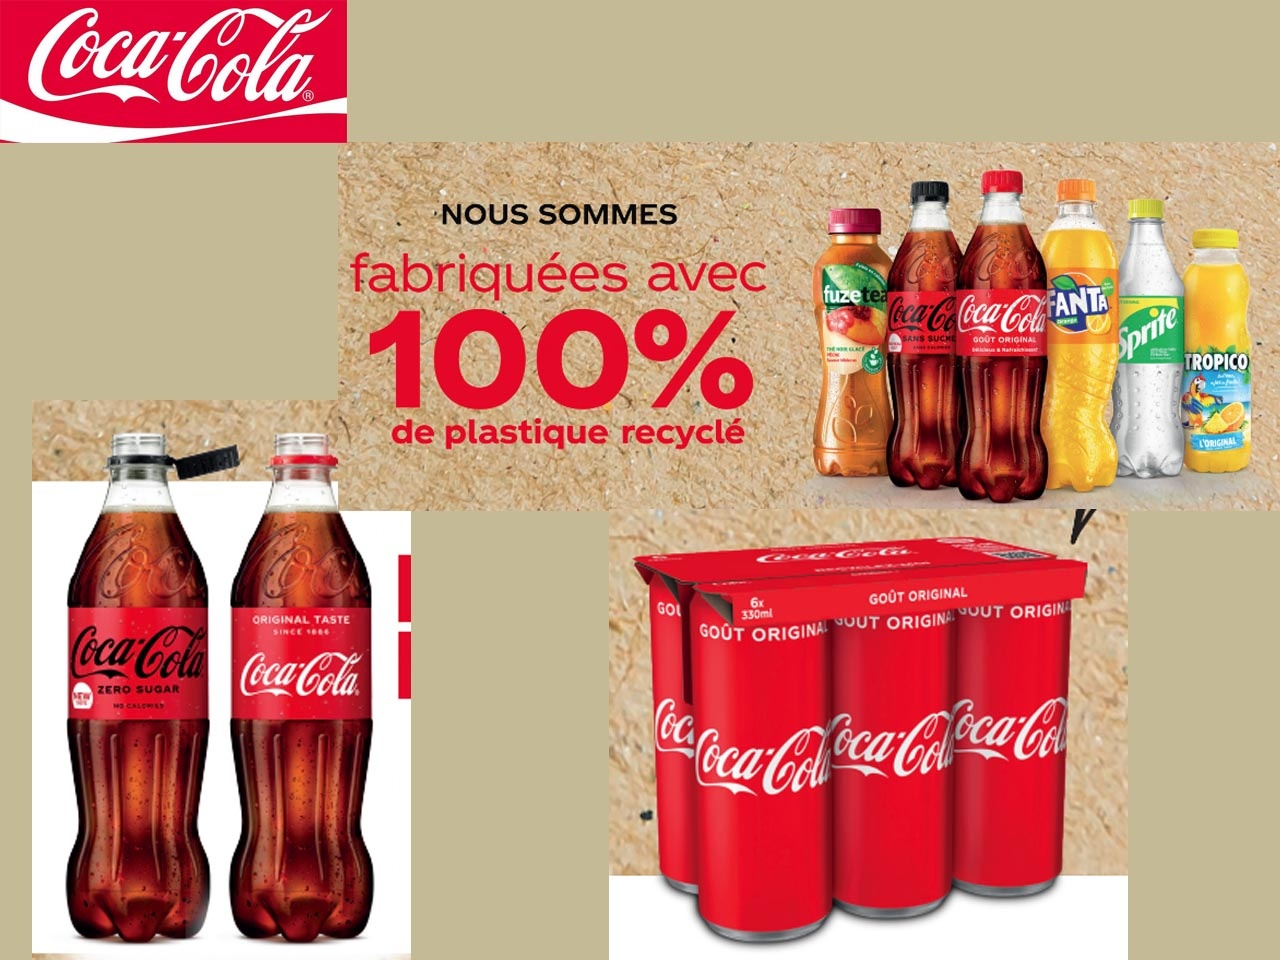 100% de plastique recyclé pour toutes les bouteilles petits formats vendues en France : Coca-Cola continue de réduire son empreinte carbone